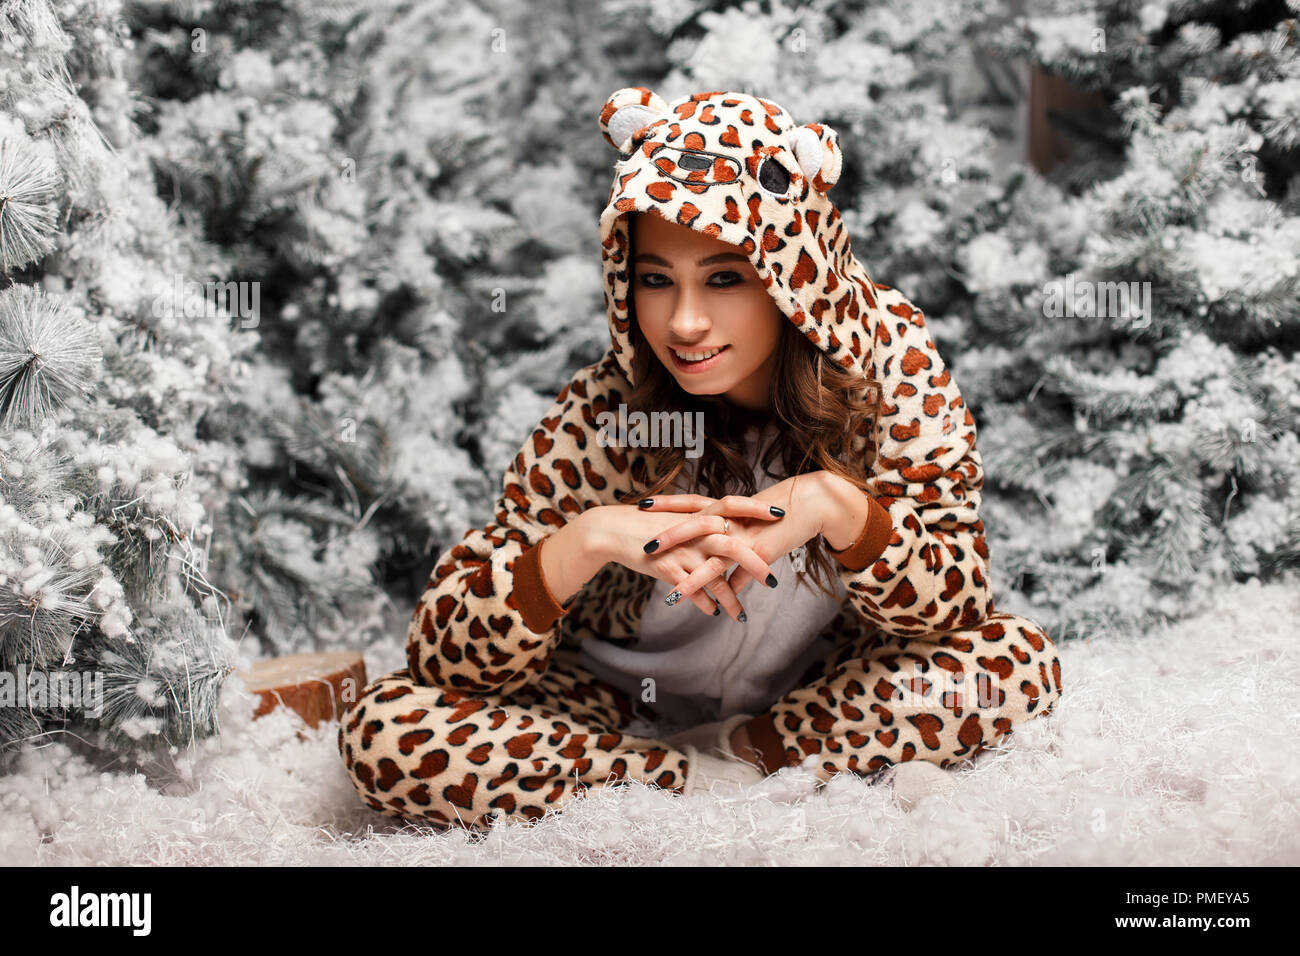 Belle jeune femme en pyjama funny assis près d'un arbre de Noël avec de la neige Banque D'Images